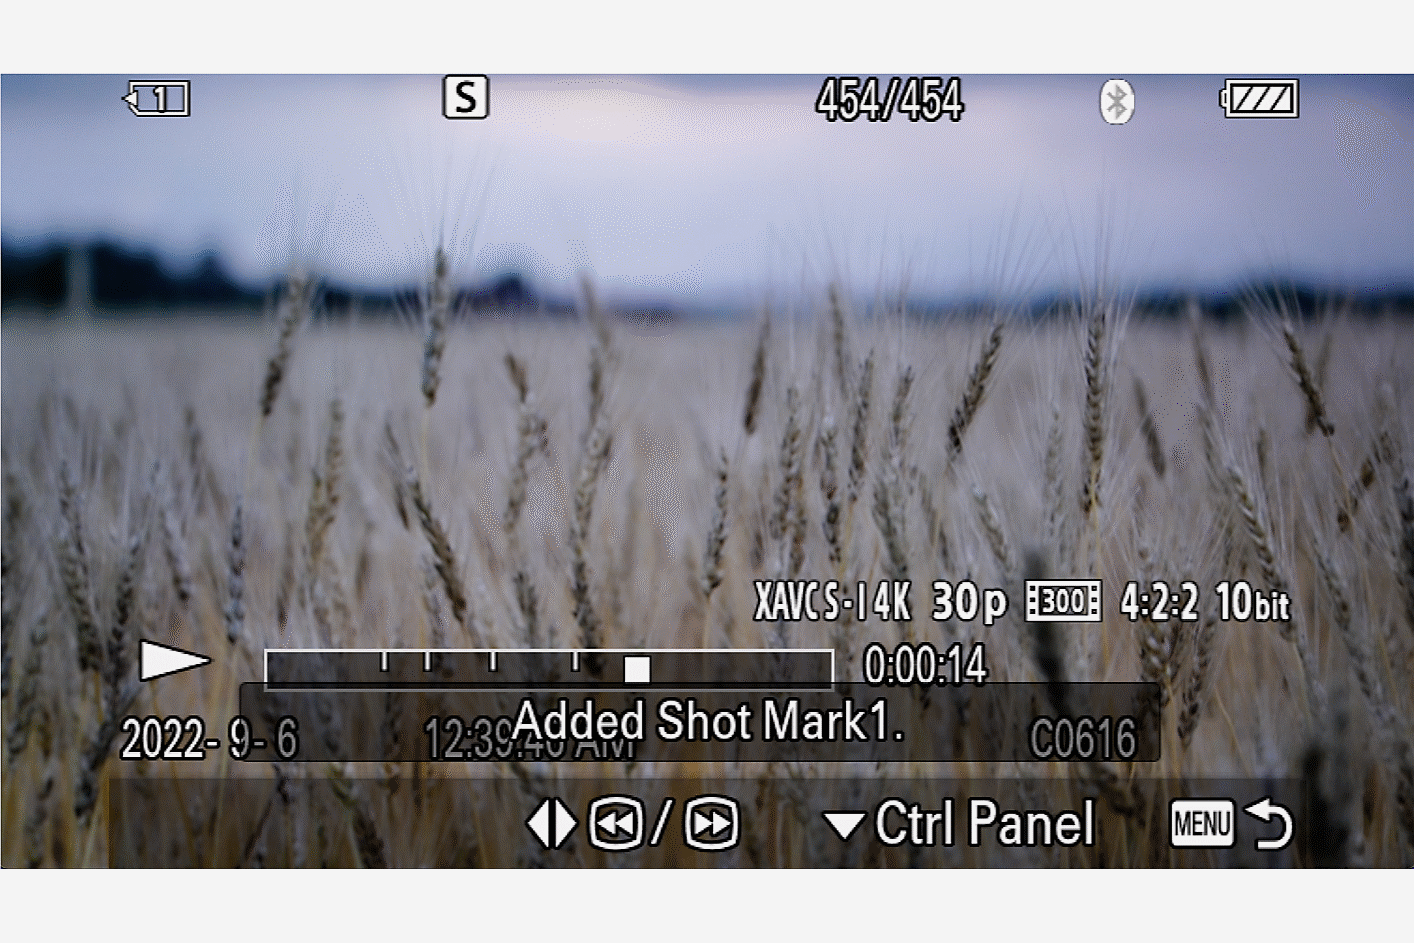 Kamera-Display, auf dem ein Gerstenfeld mit darüberliegendem Text zu einer festgelegten Aufnahmemarkierung angezeigt wird